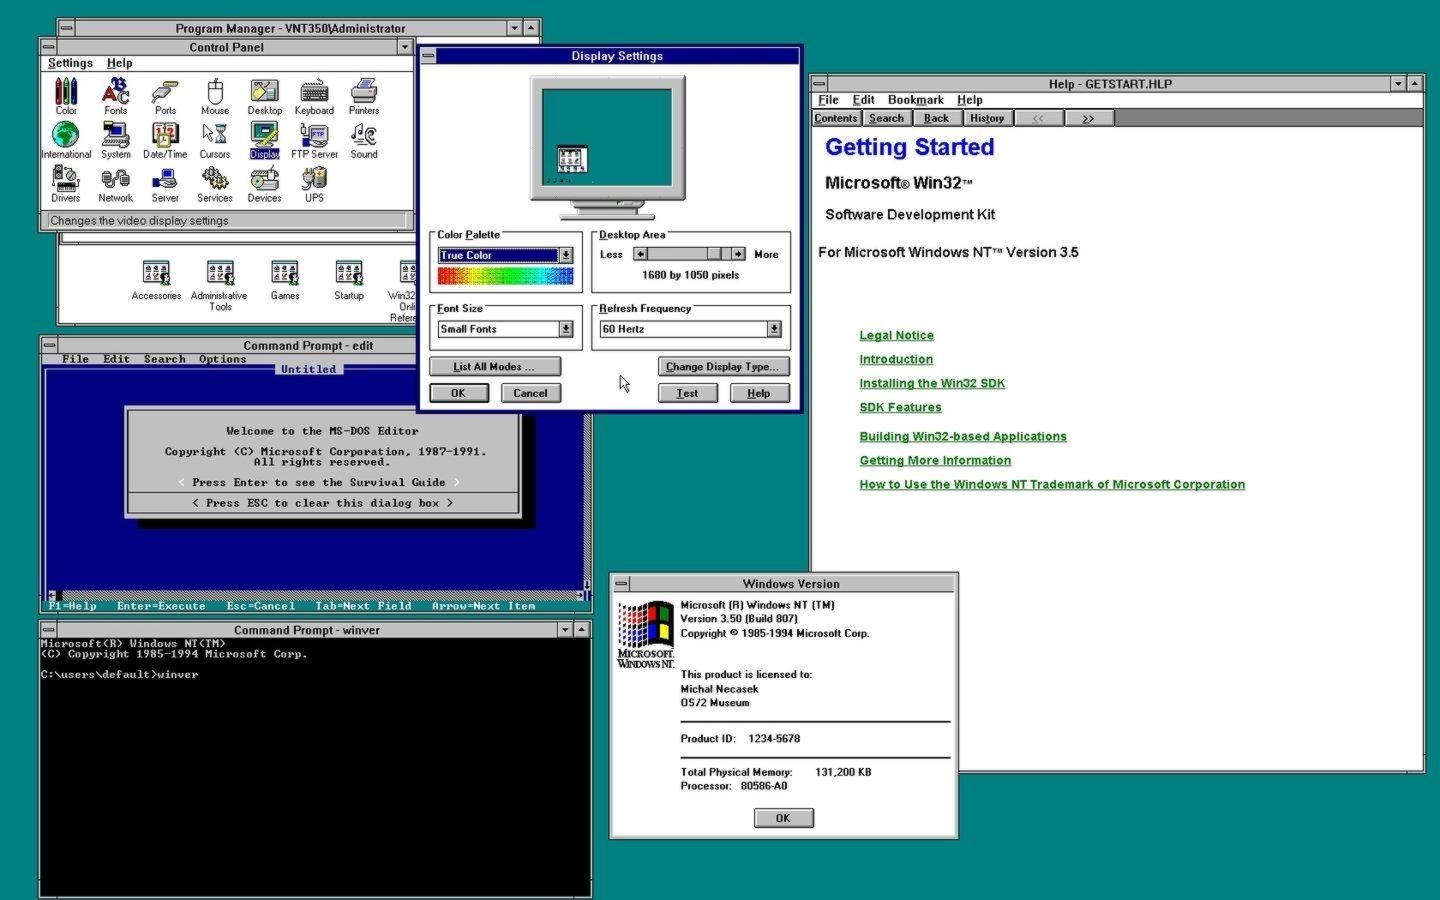 Windows NT 3.5: Mejoras en redes, tecnología, y visualización